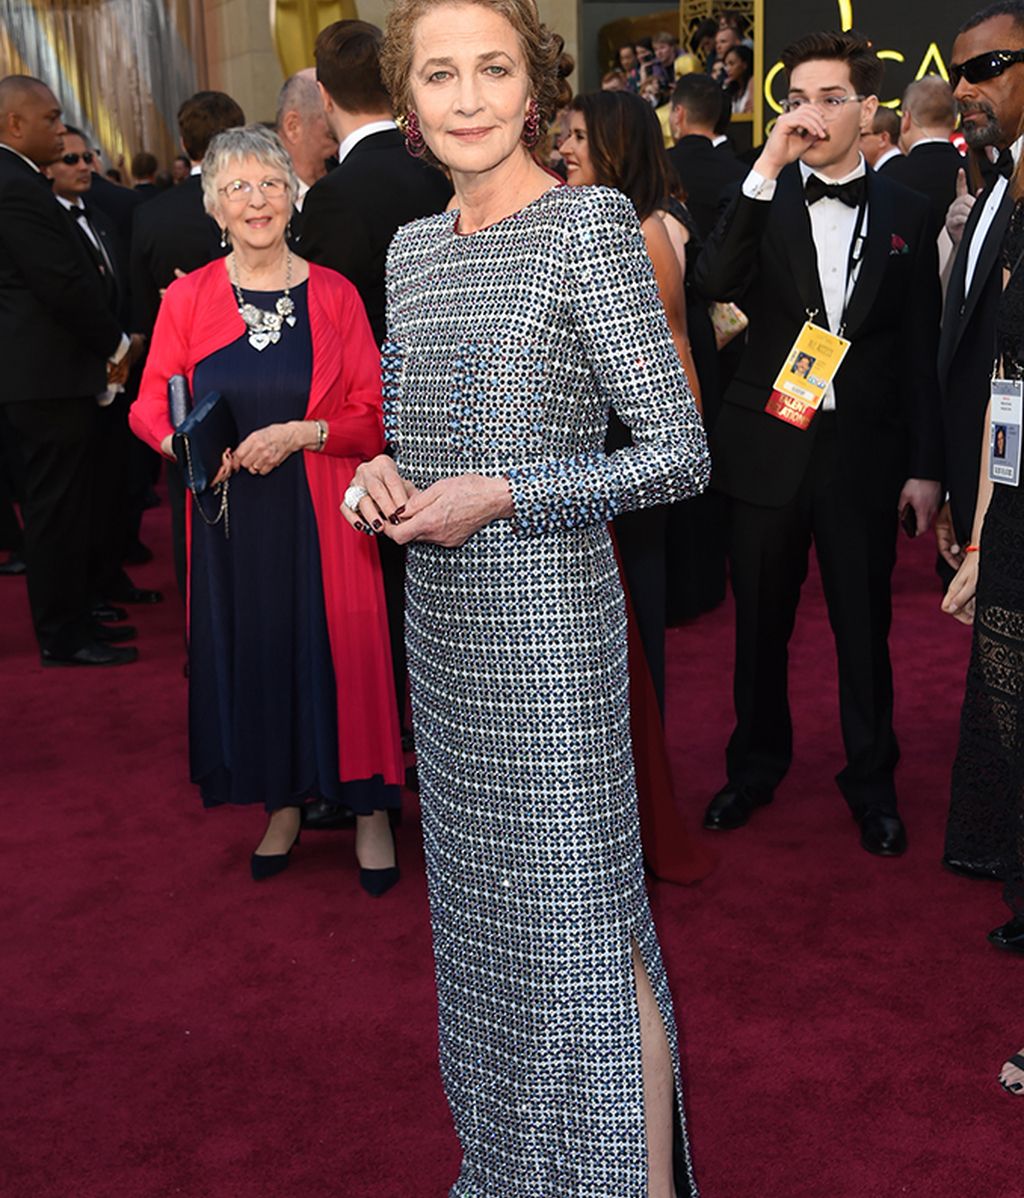 La alfombra roja de los Oscars foto a foto